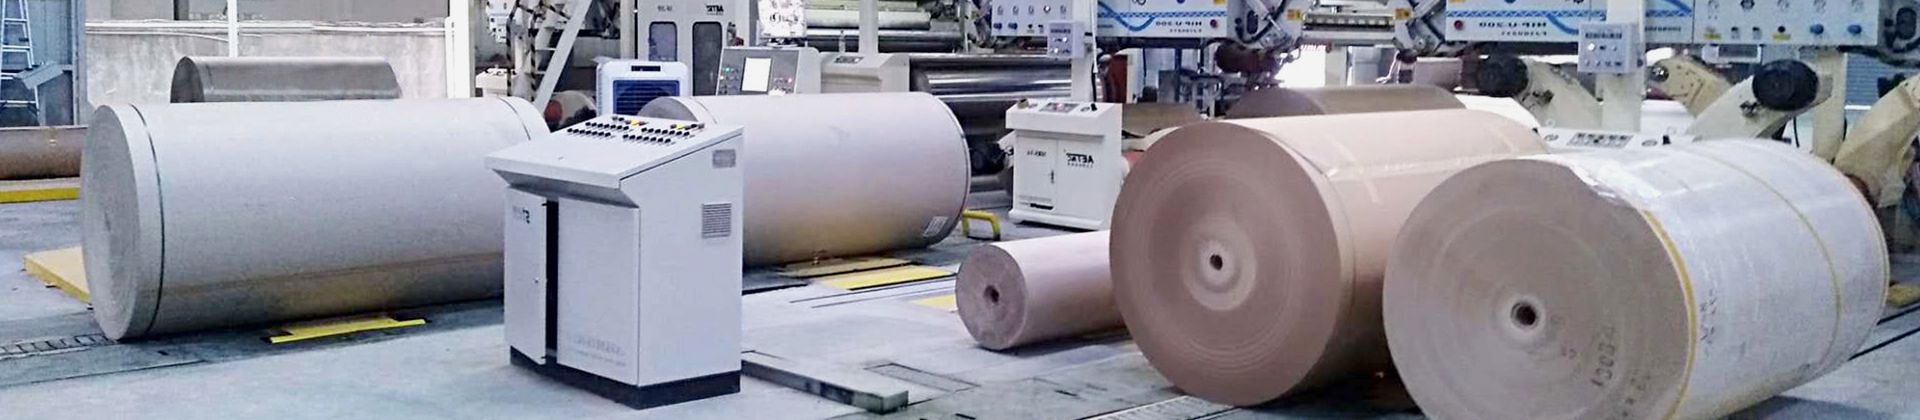 Sistema de manejo de rollos de papel